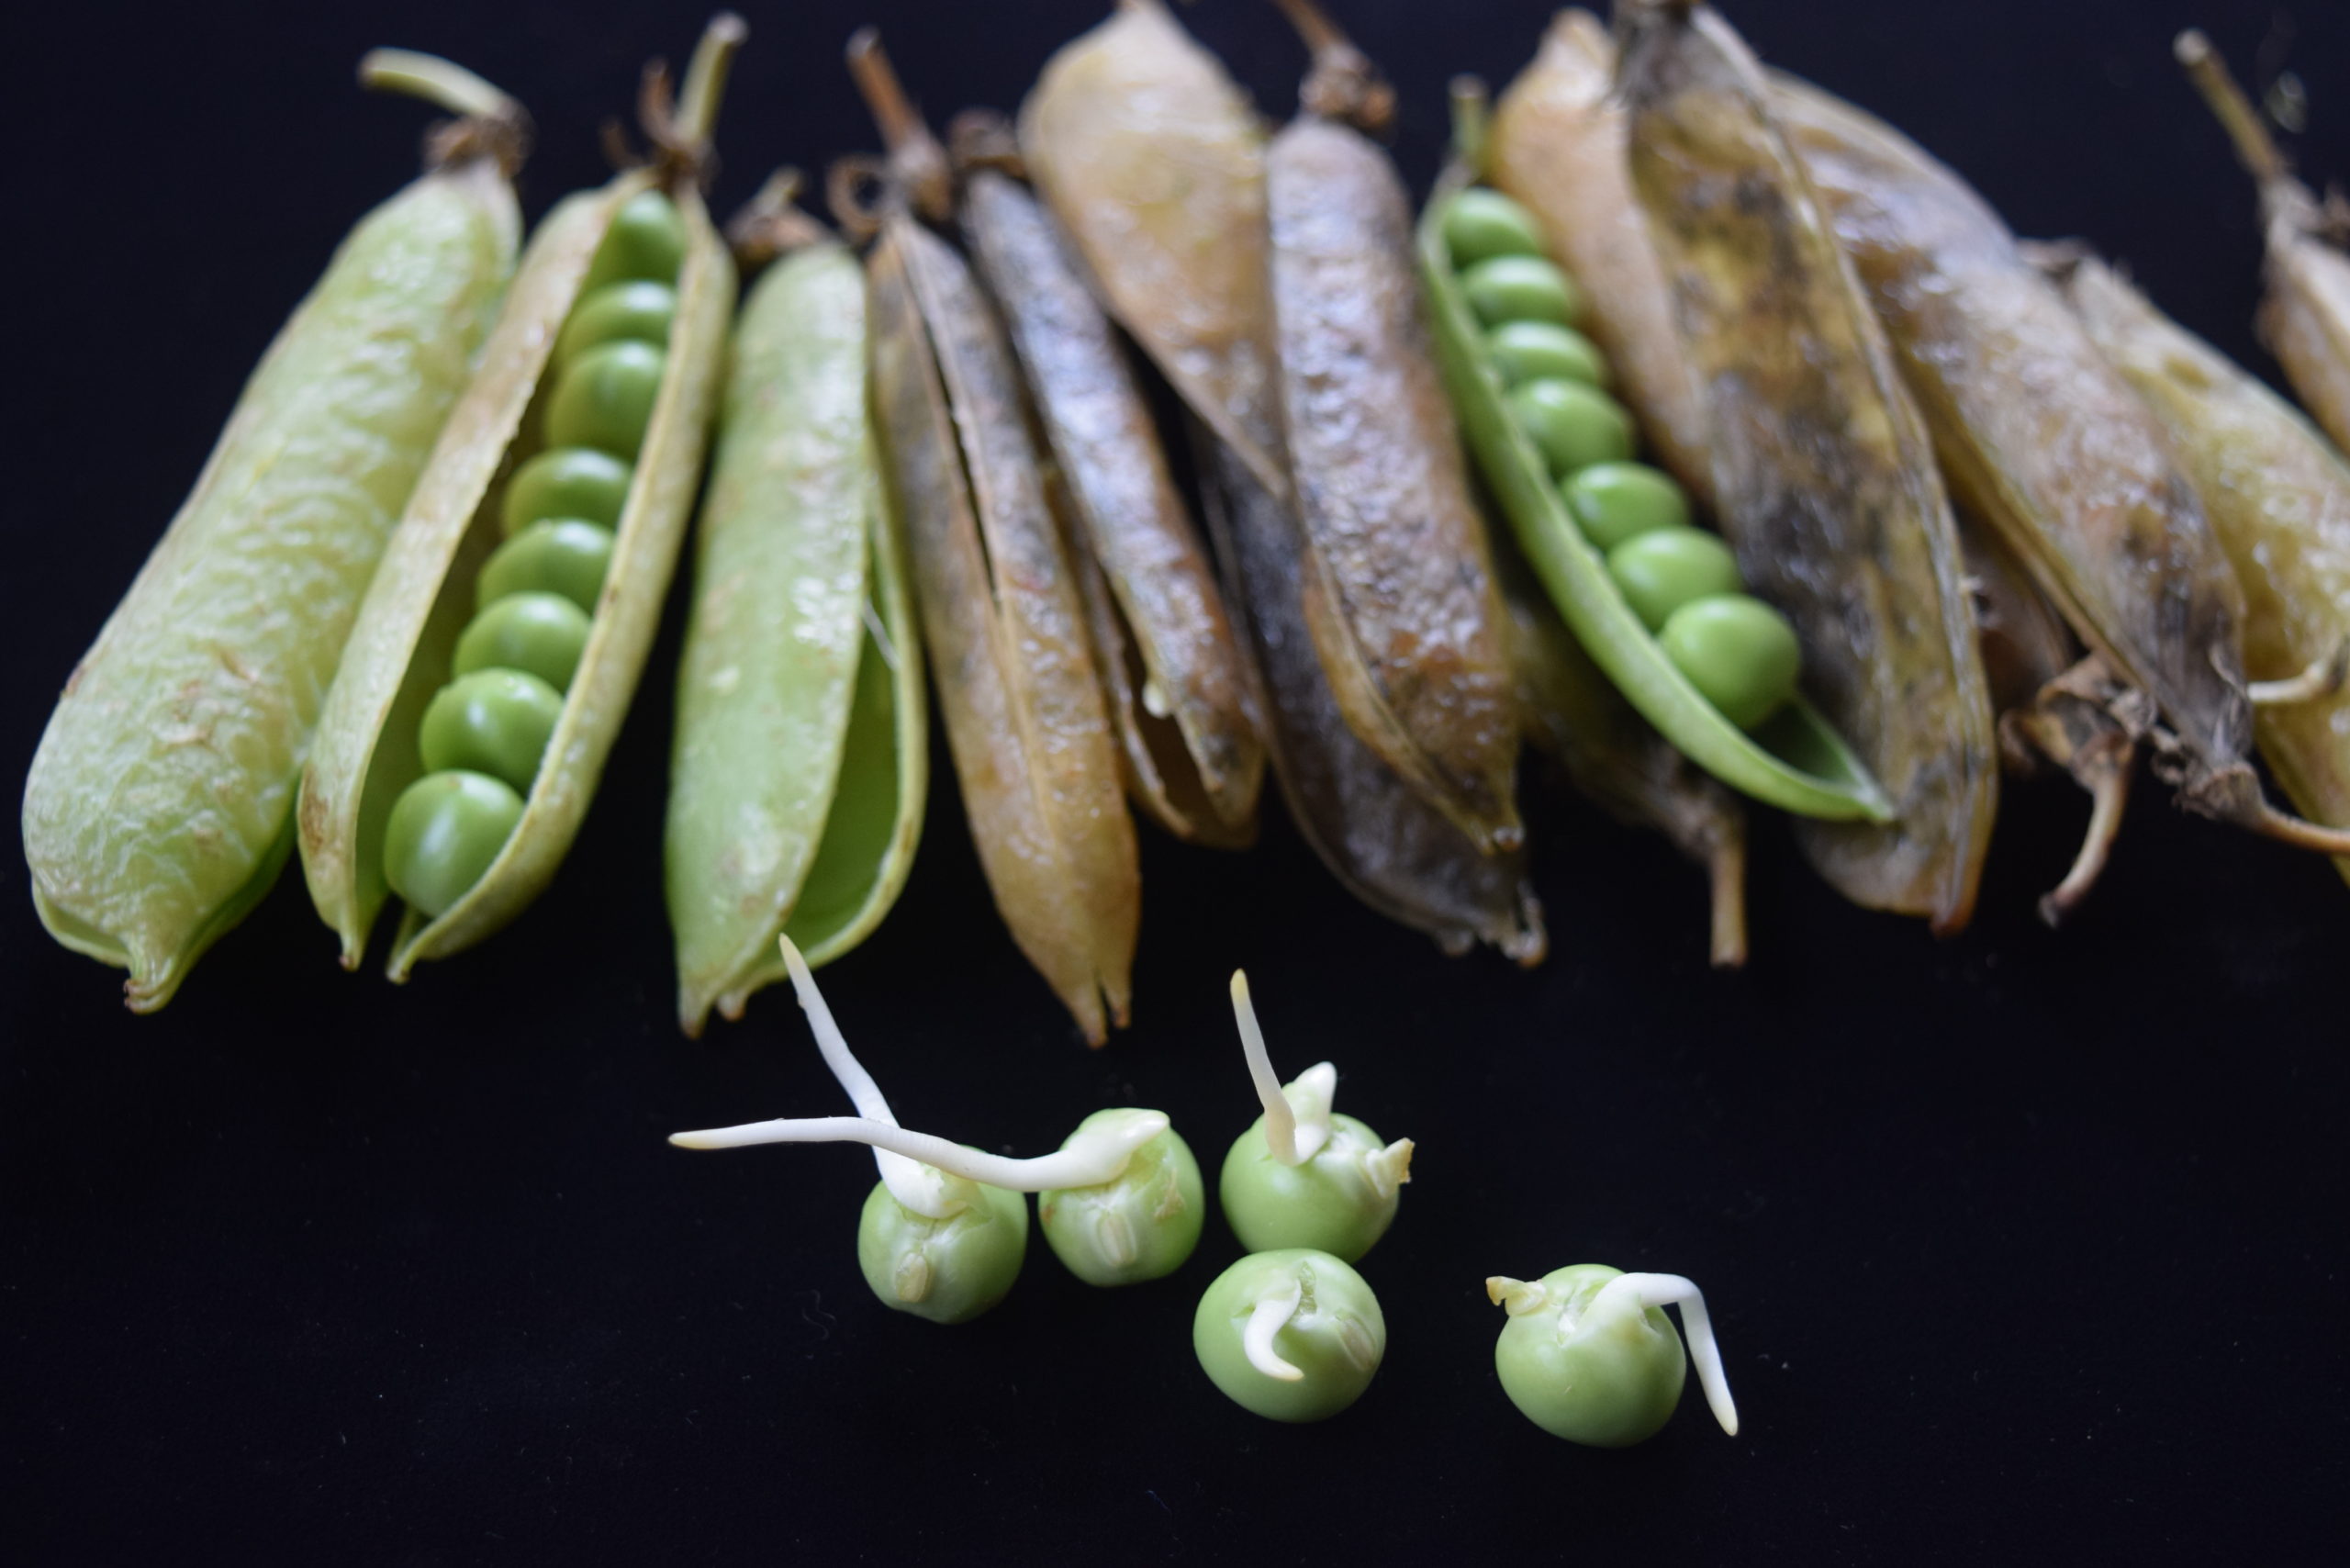 えんどう豆の、姿を撮影してみました。